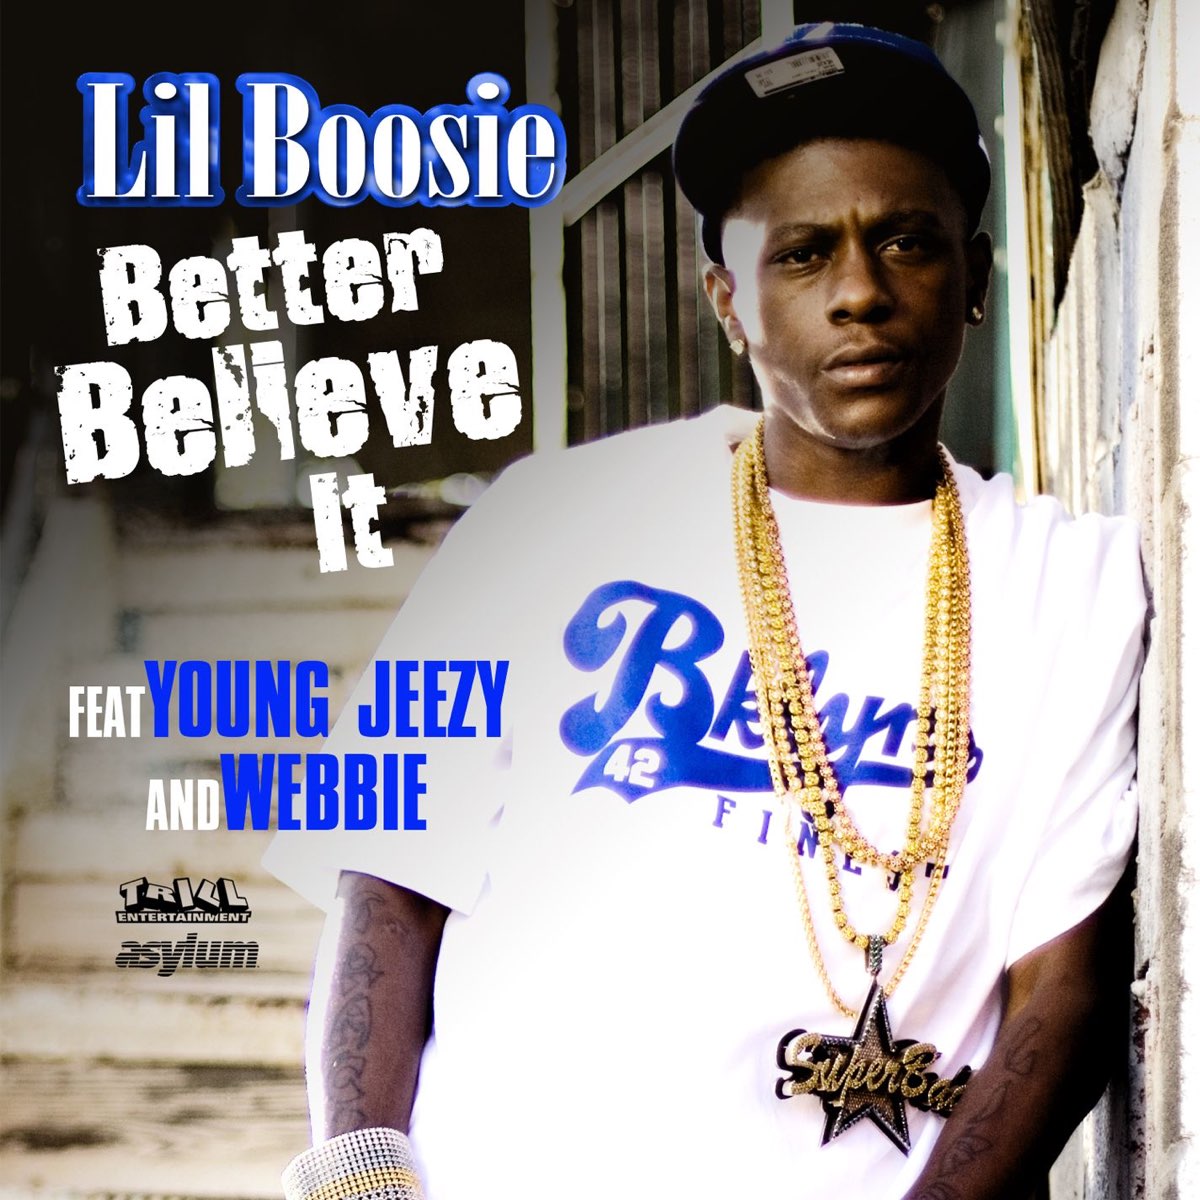 Young Jeezy & Webbie) - Single de Lil Boosie.